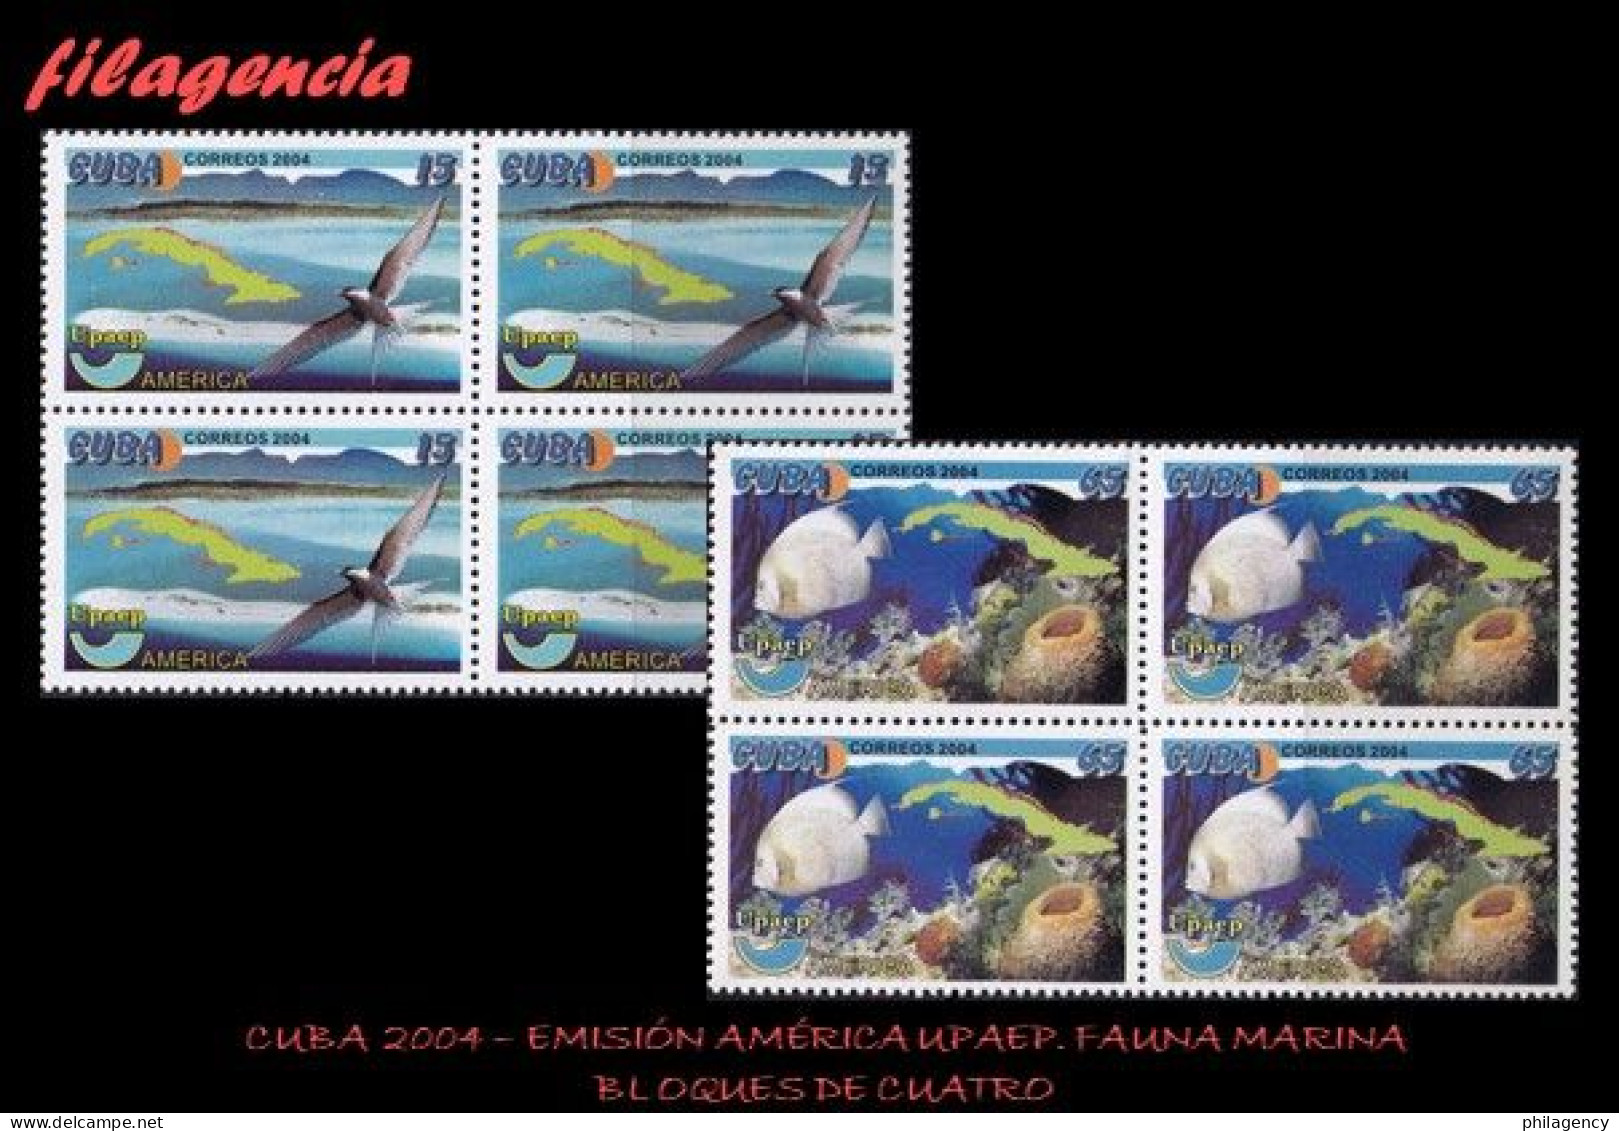 CUBA. BLOQUES DE CUATRO. 2004-21 EMISIÓN AMÉRICA UPAEP. PROTECCIÓN DEL MEDIO AMBIENTE - Nuevos